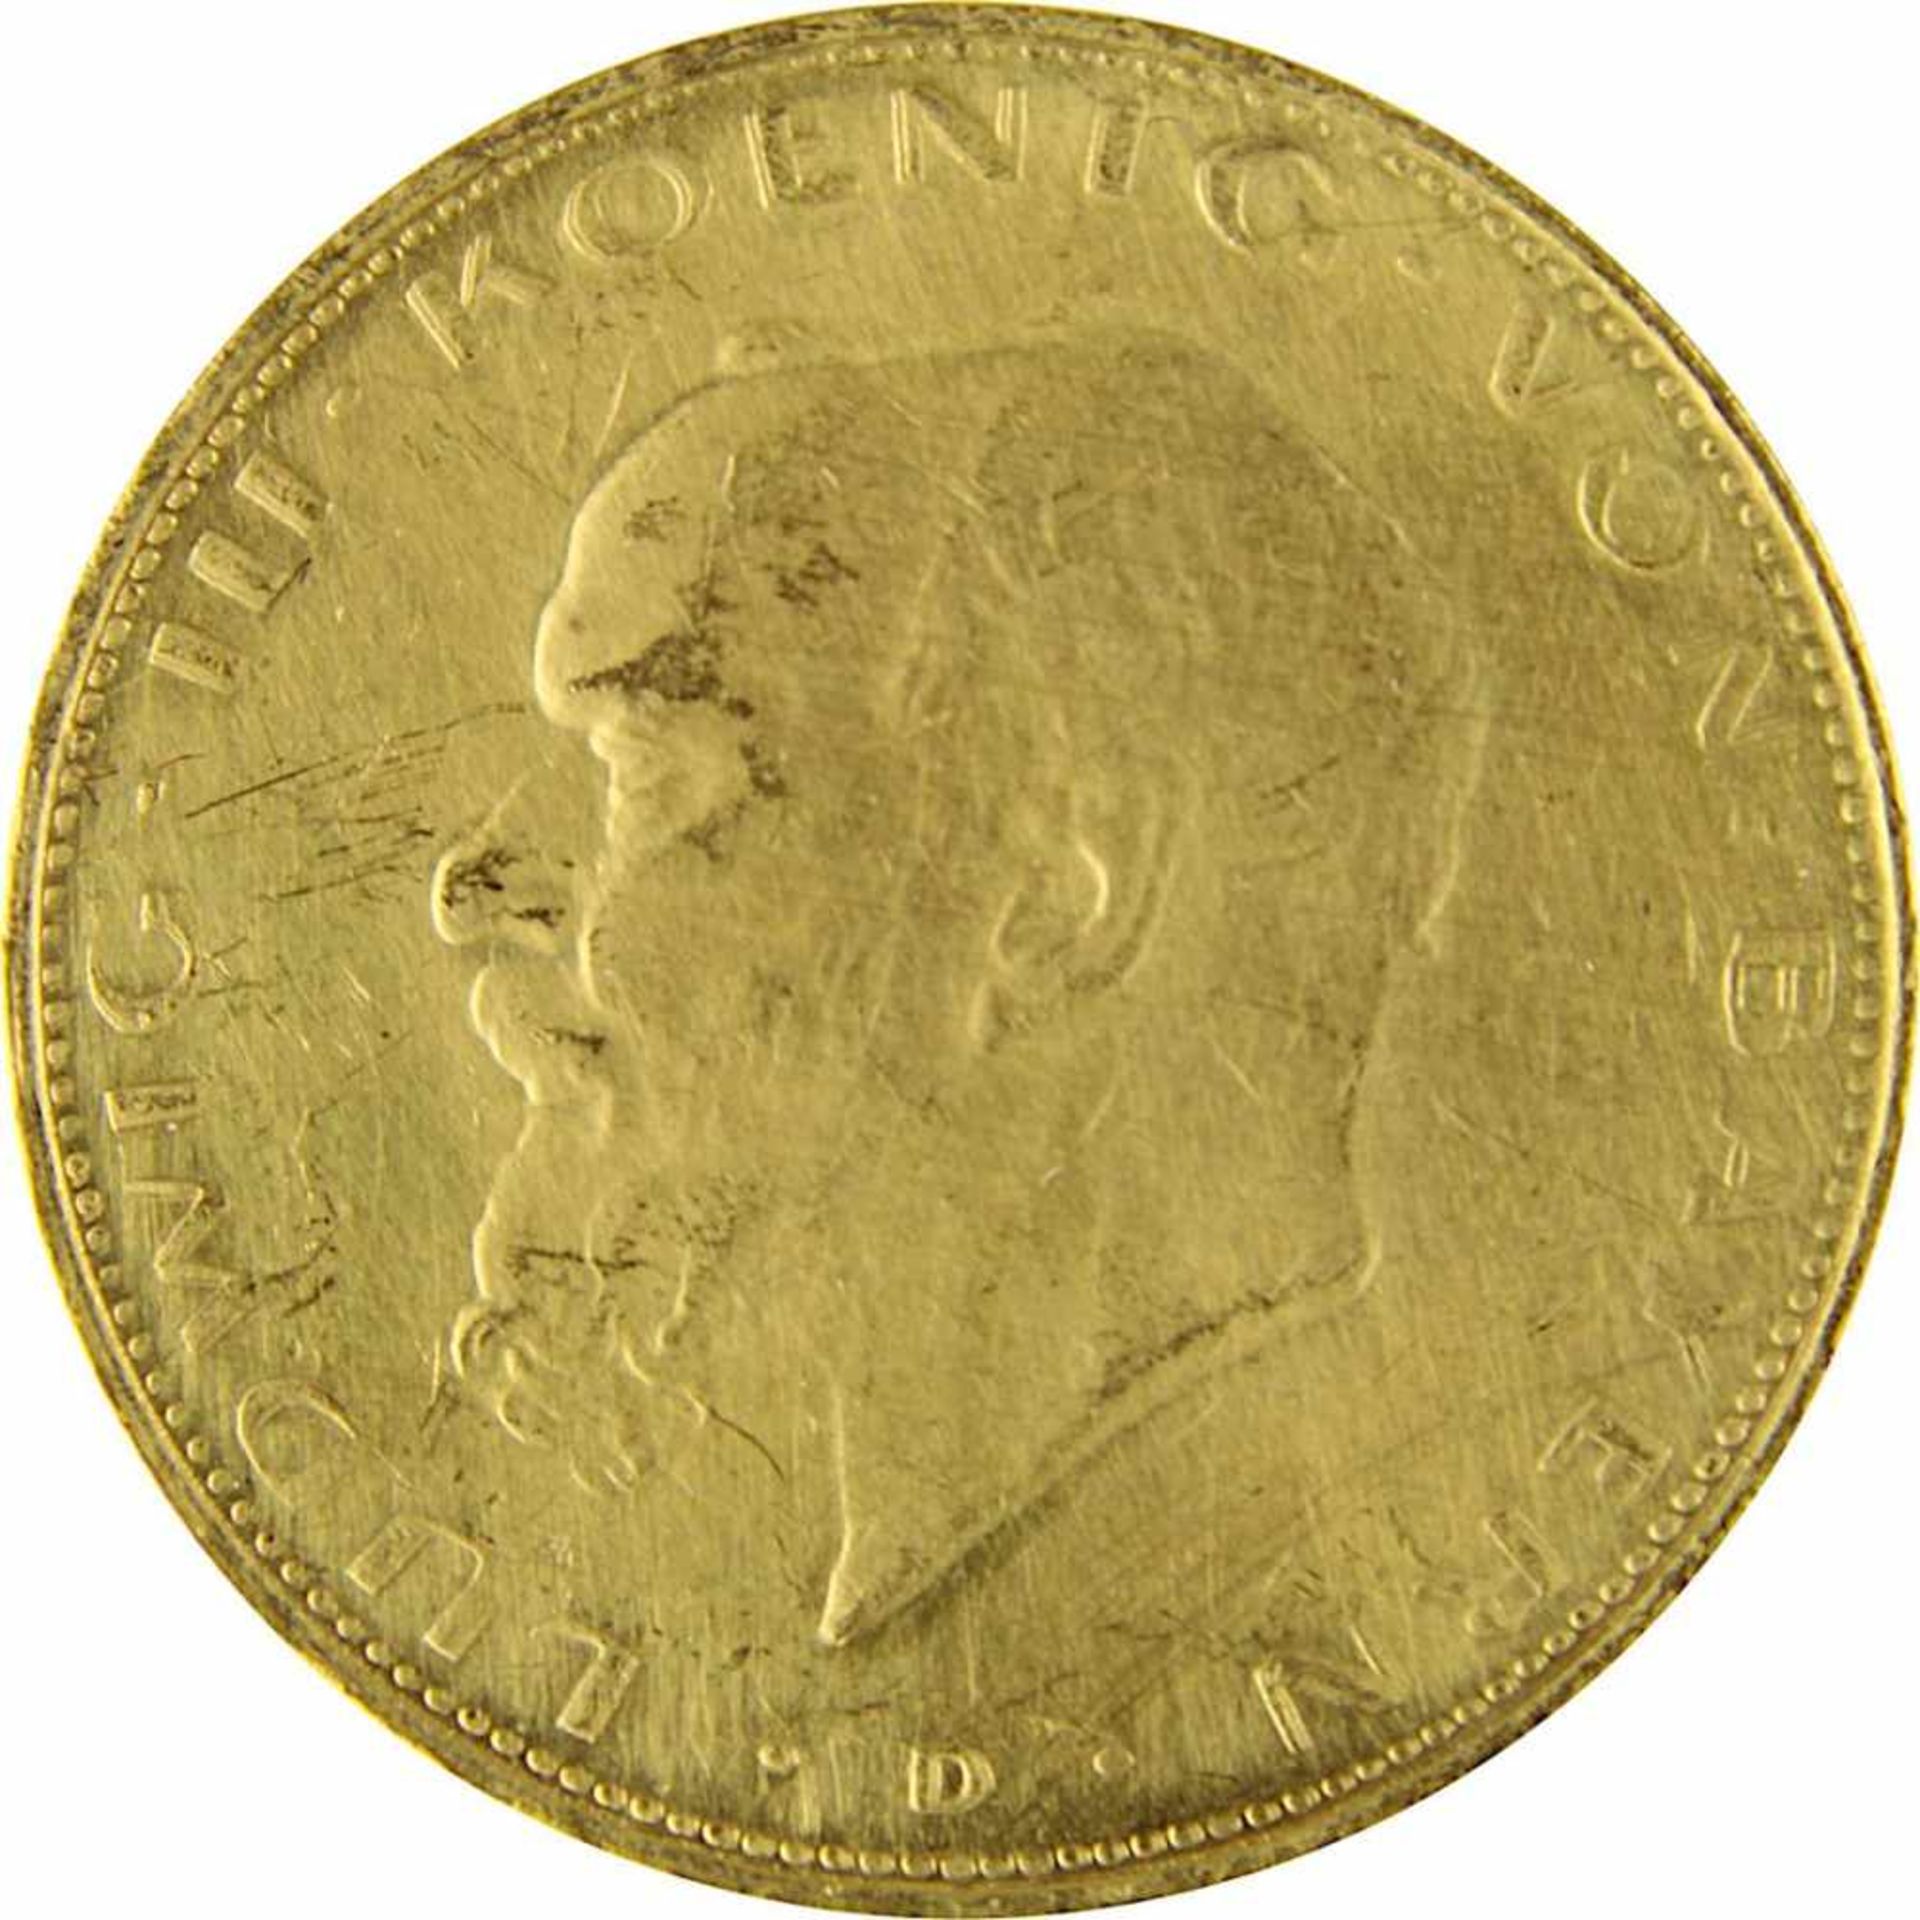 zurückgezogen / withdrawn---20 Mark Goldmünze Deutsches Reich, Bayern 1914, 900er Gold, VS Ludwig - Bild 2 aus 3